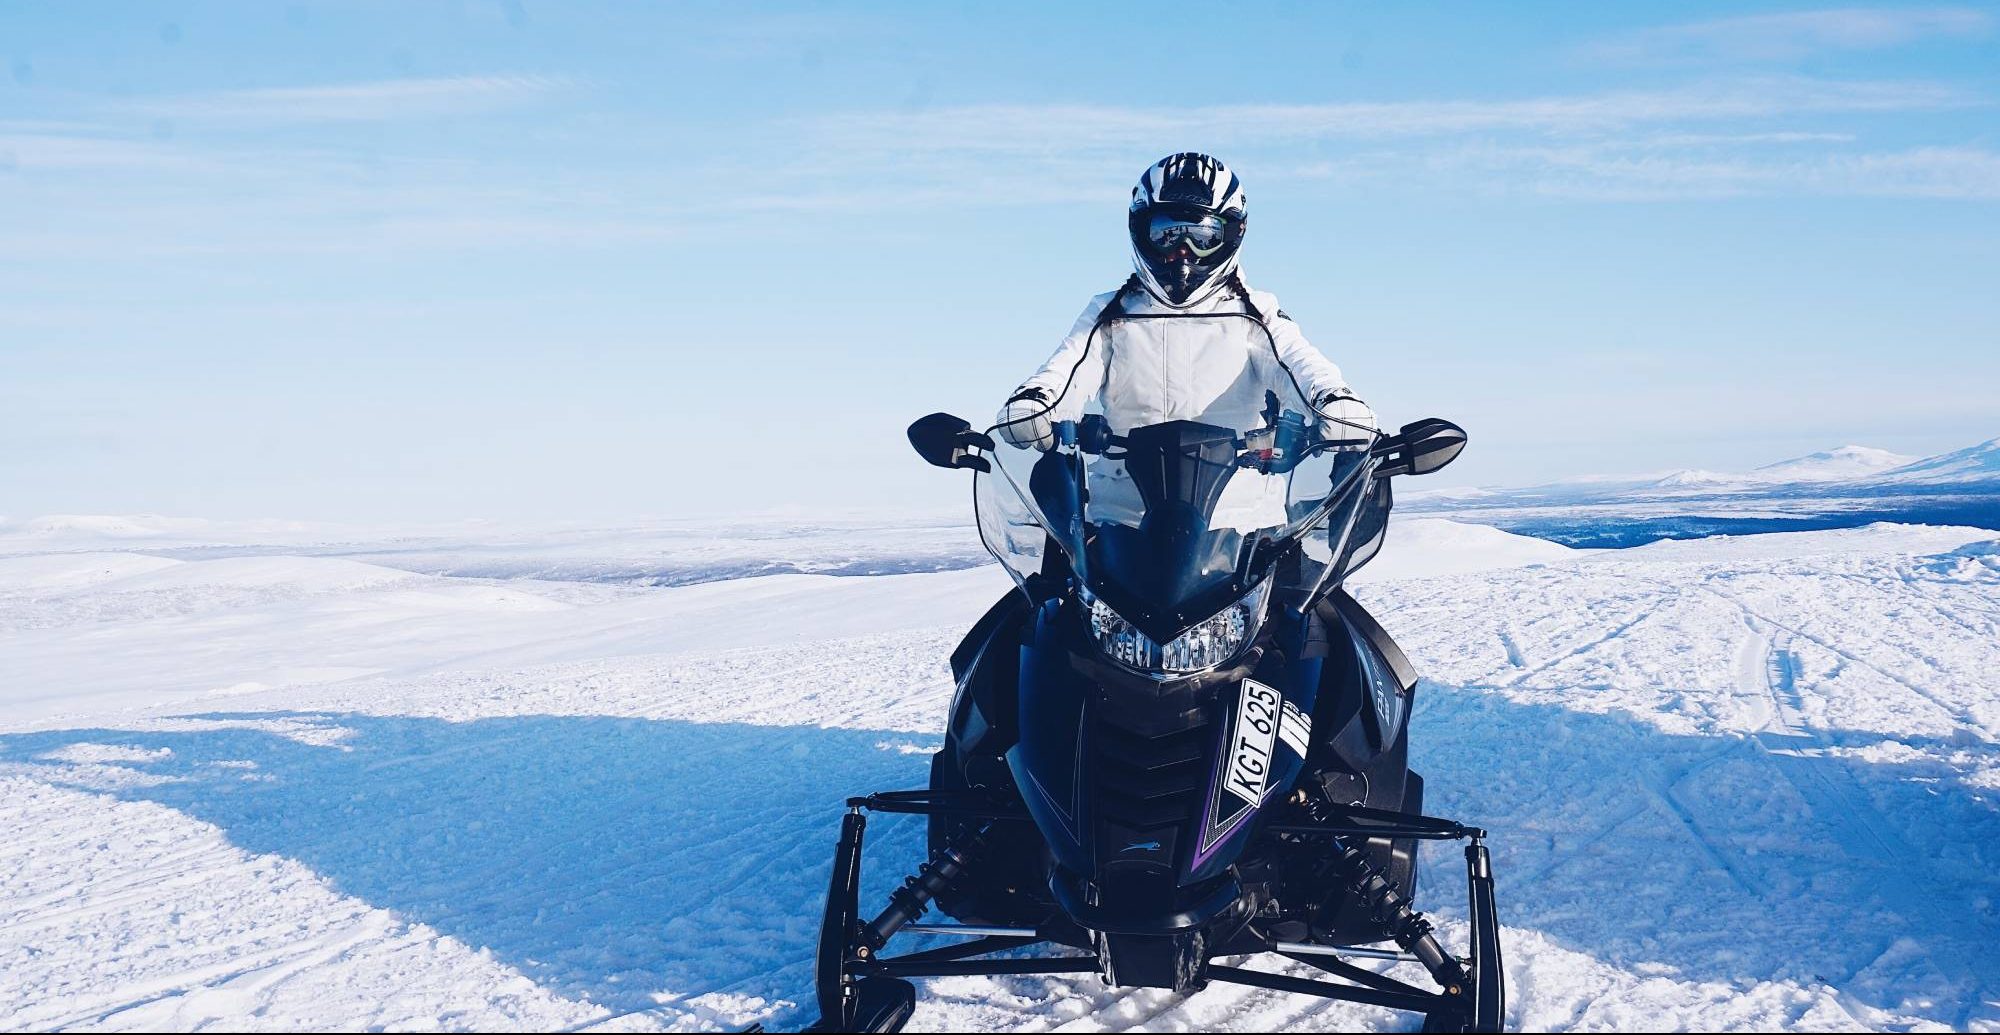 Πού μπορούμε να κάνουμε Snowmobile στα χιονισμένα βουνά της Ελλάδας;